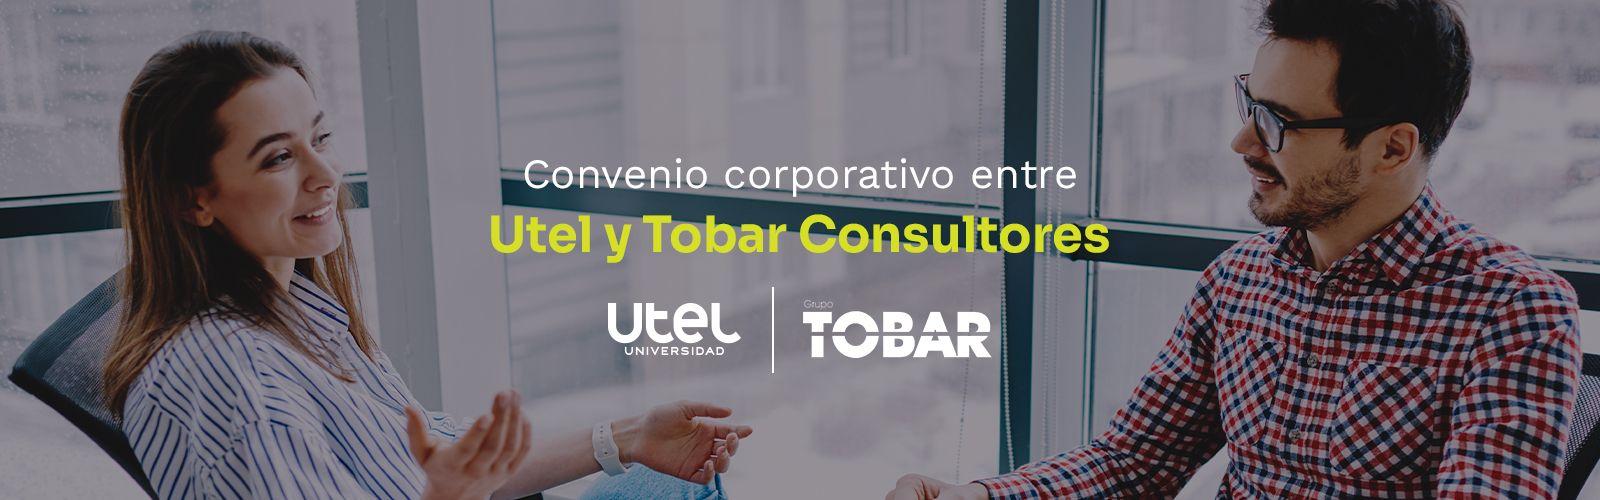 Convenio_corporativo_entre_Utel_y_Tobar_Consultores_50ed73ef43.png